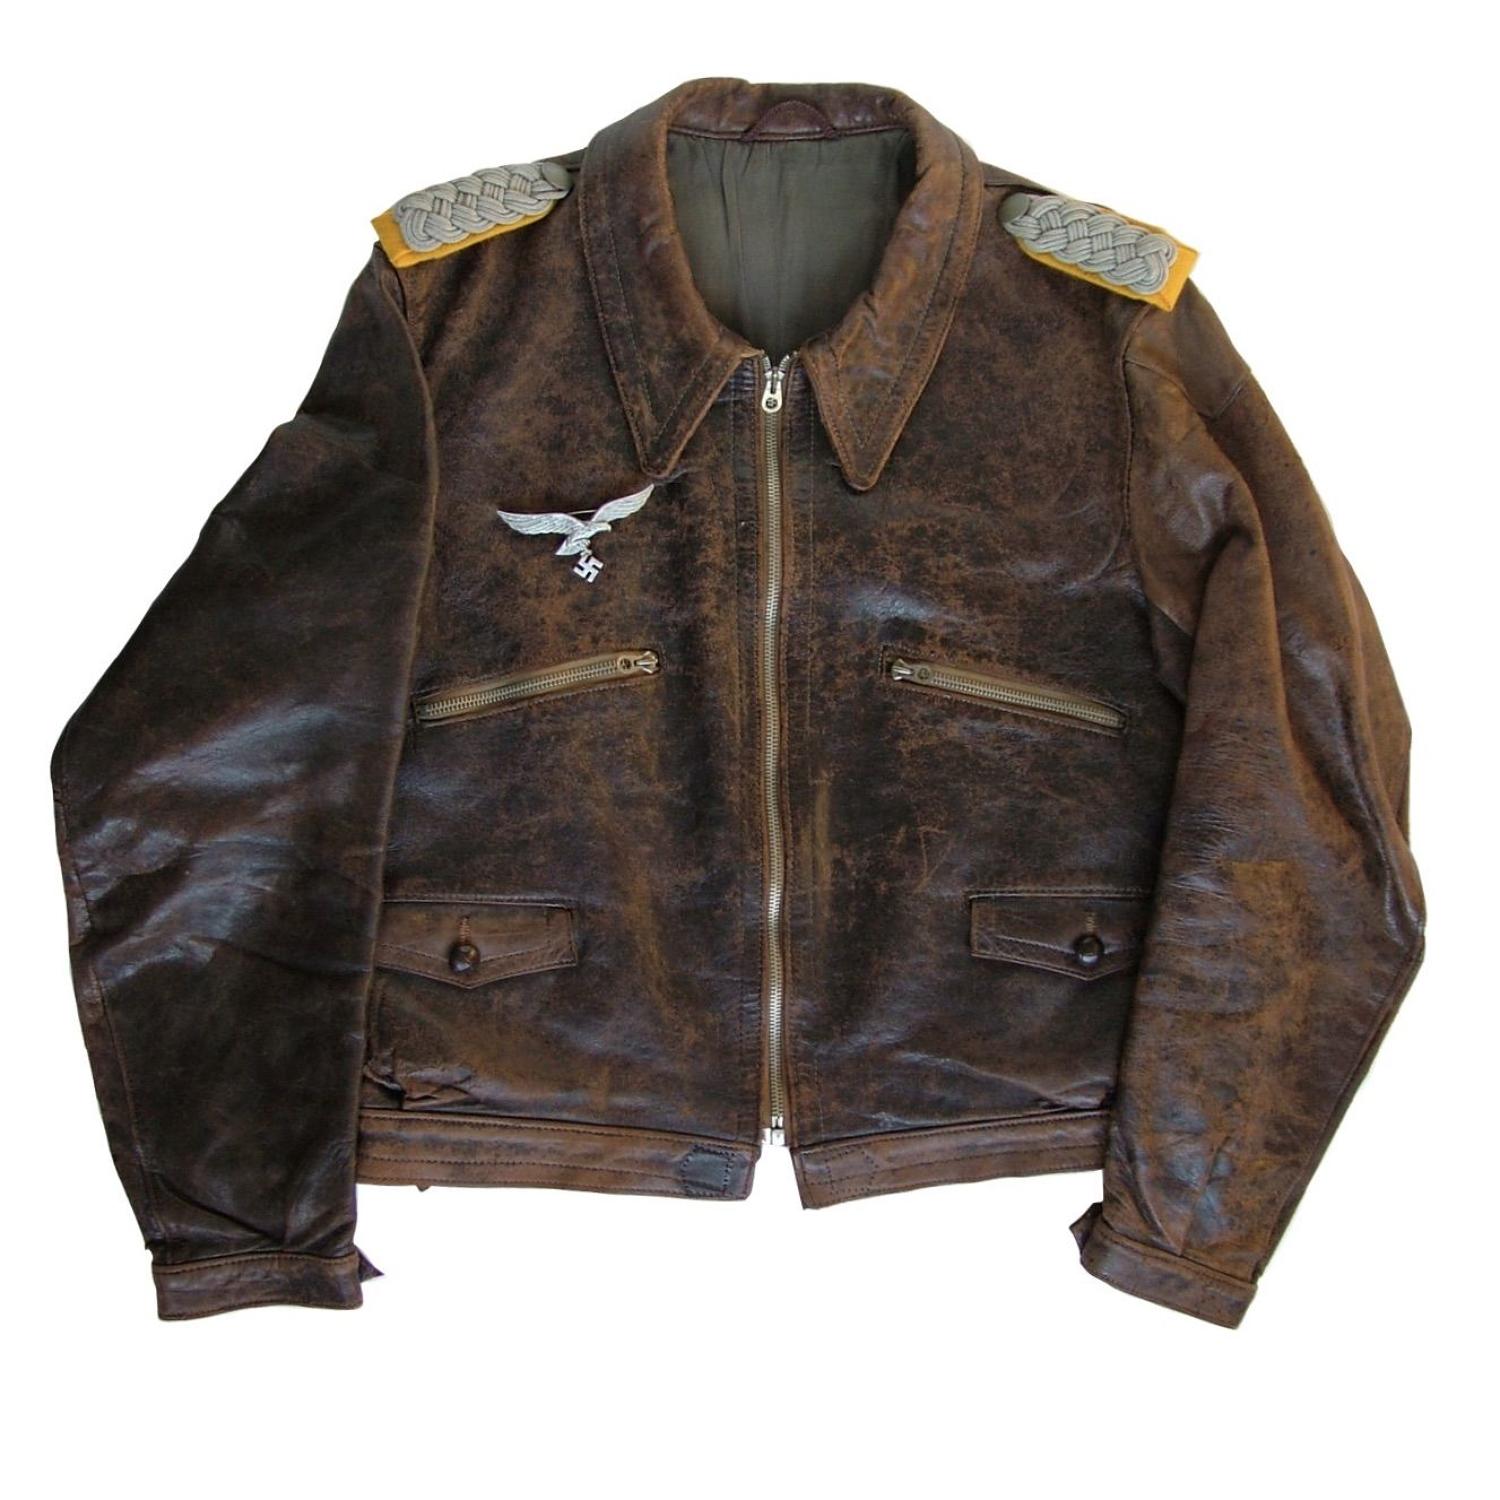 Luftwaffe flying jacket